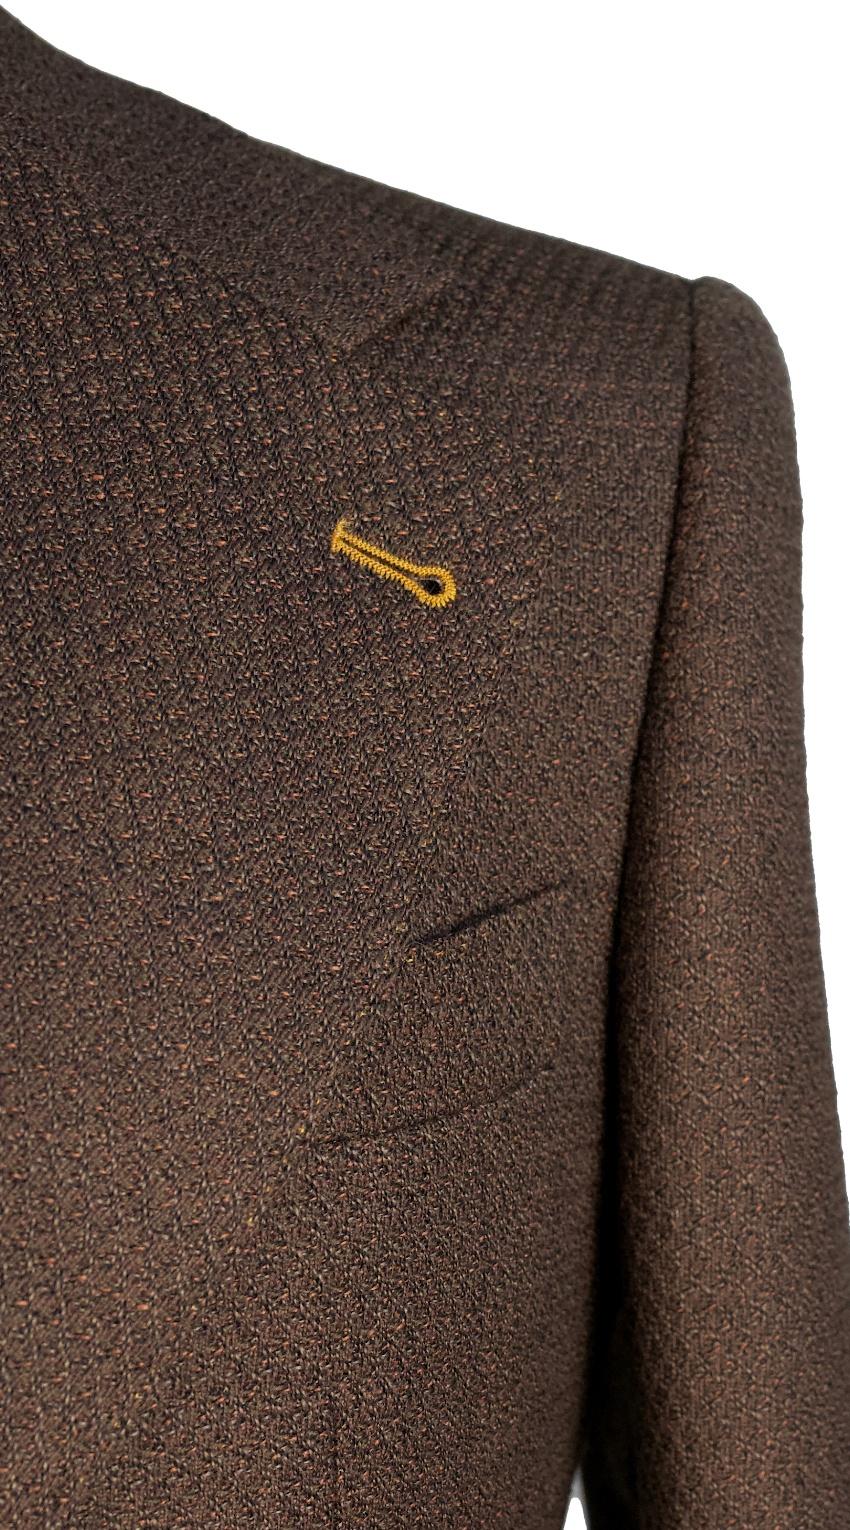 Brown Tweed Suit